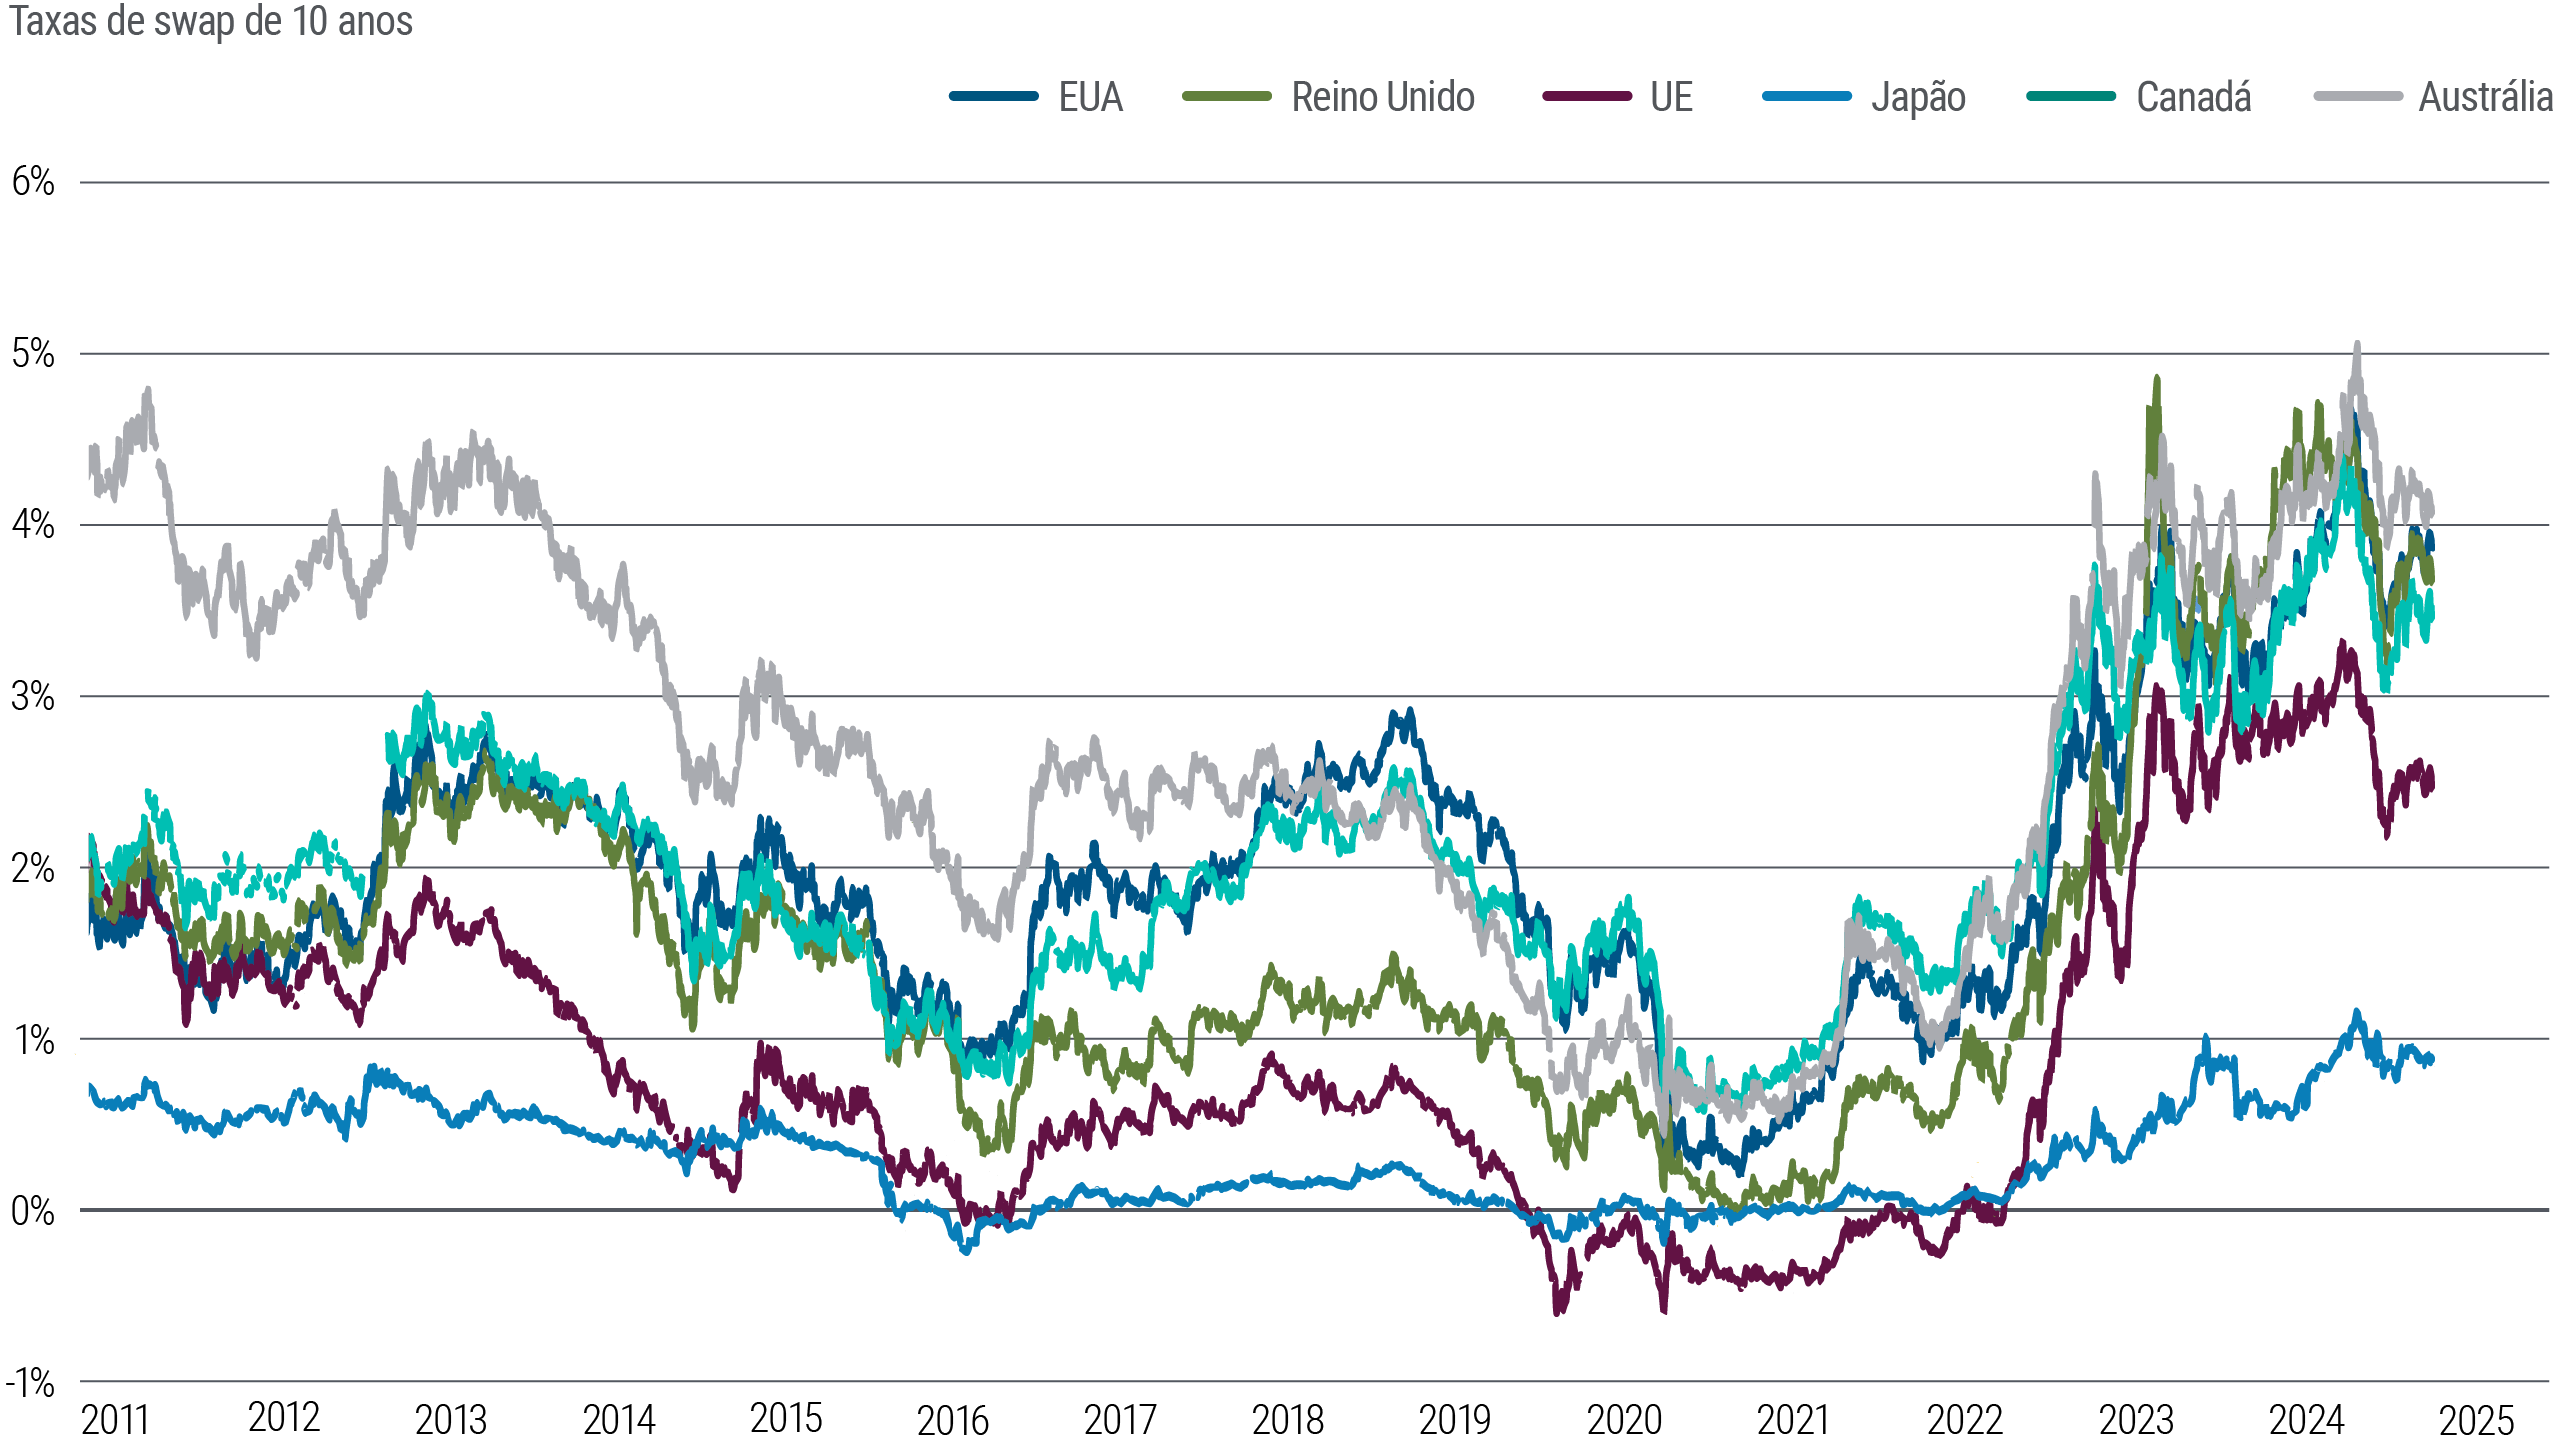 A Figura 6 é um gráfico de linhas que compara as taxas de swap de títulos soberanos de 10 anos nos EUA, Zona do Euro, Reino Unido, Japão, Austrália e Canadá de 2011 a março de 2024. Todas essas taxas caíram abaixo de 1% (ou ficaram até mesmo negativas no Japão) em 2020, nos primeiros dias da pandemia, e aumentaram posteriormente em graus diferentes e com volatilidade variável. Em março, as taxas de swap dos EUA estavam em torno de 3,9%, as da zona do euro em torno de 2,5% e as do Japão em torno de 0,9%.